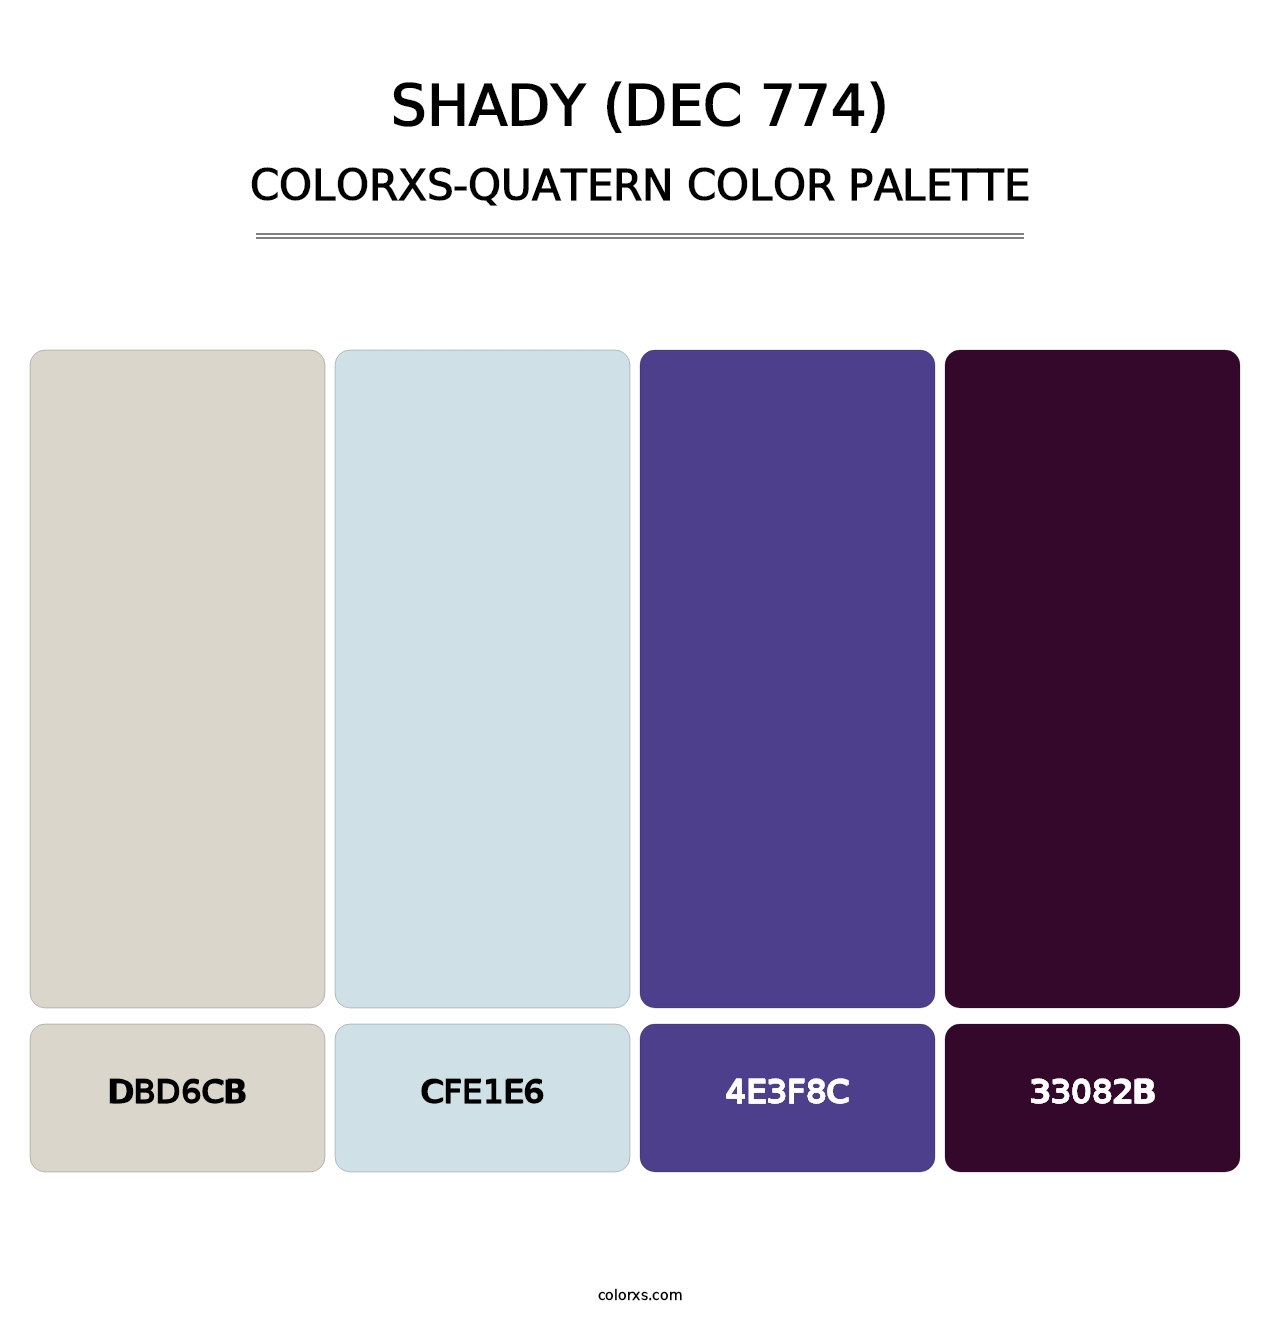 Shady (DEC 774) - Colorxs Quatern Palette